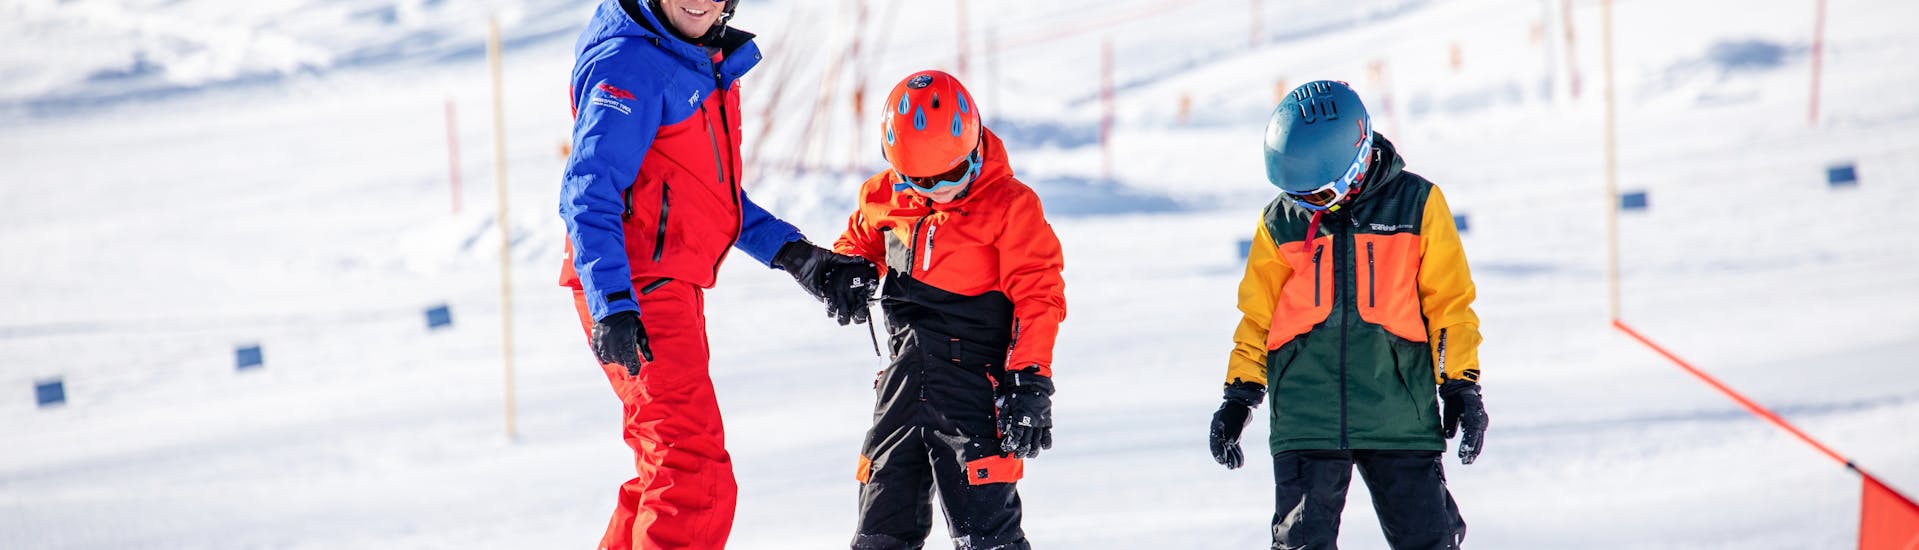 Les snowboarders dévalent les pentes à toute vitesse pendant les cours de snowboard pour enfants et adultes - tous niveaux.